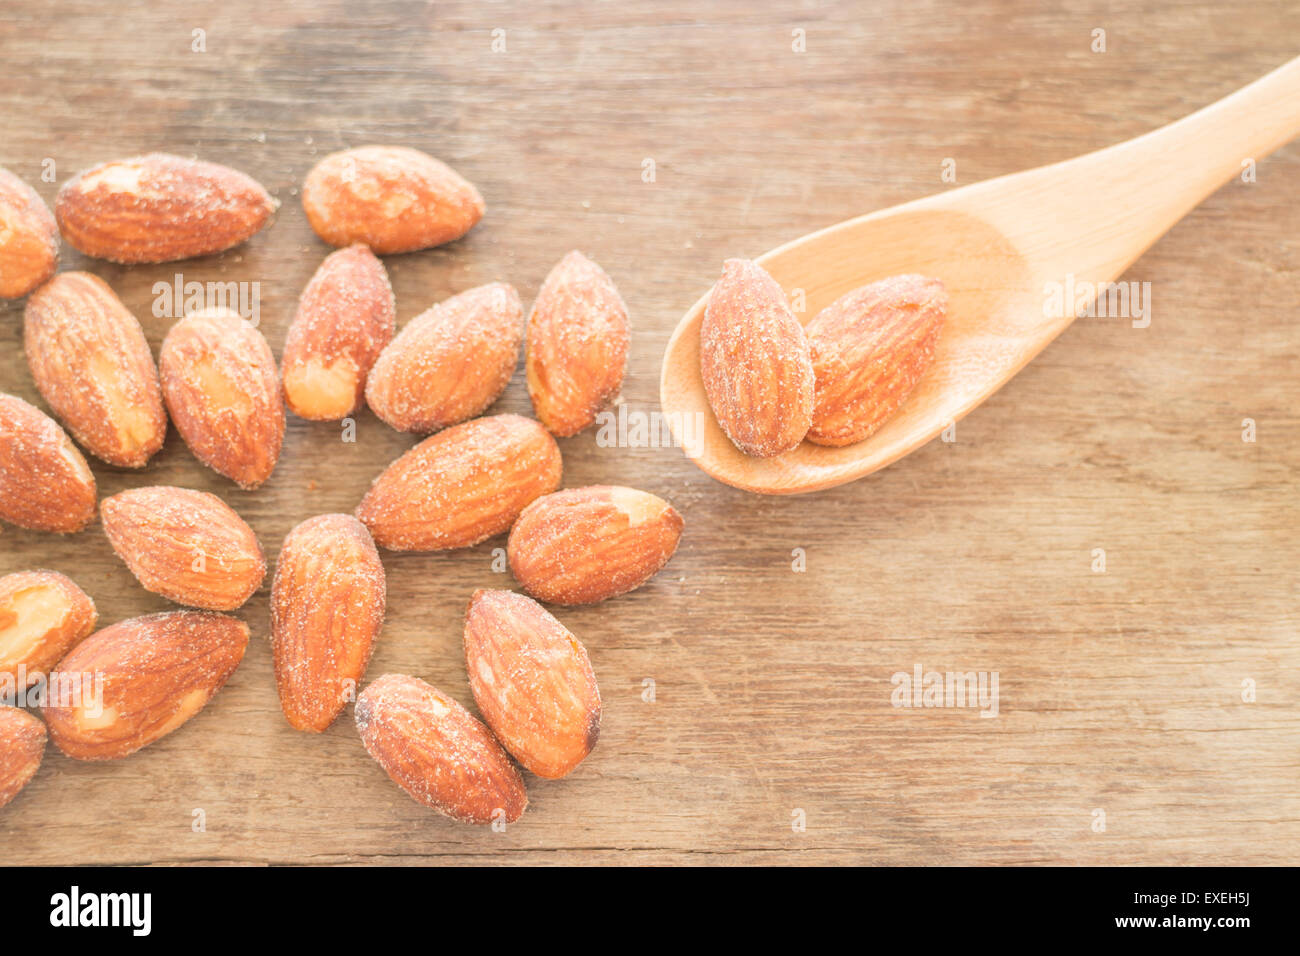 Almond grain roast salt on weathered wooden table, stock photo Stock Photo